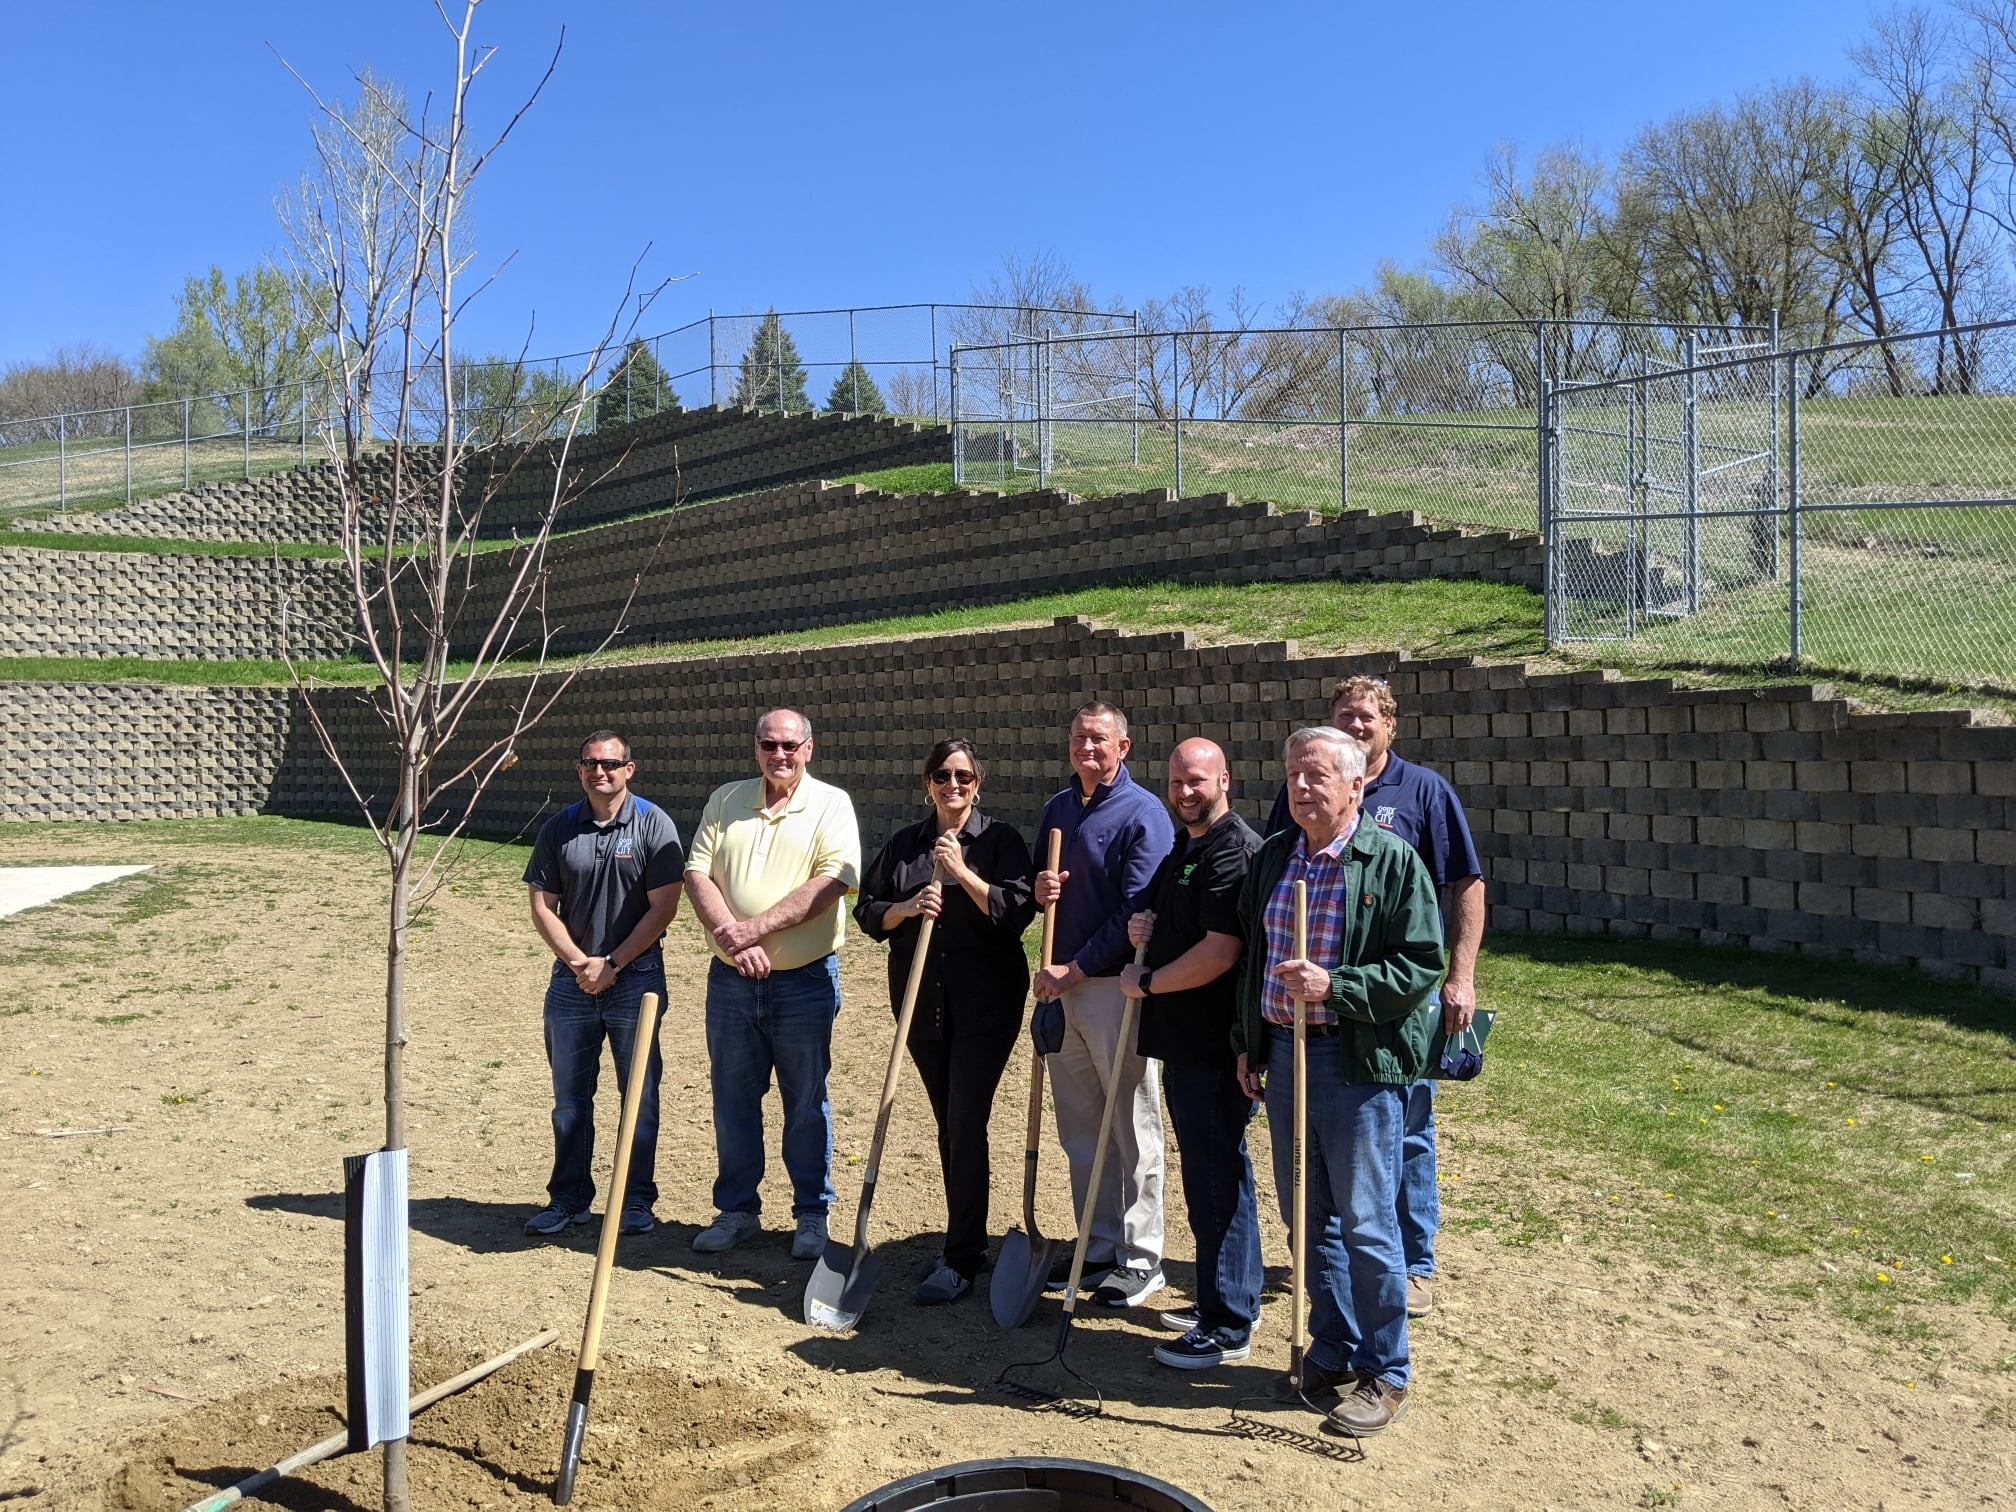 Sioux City në ShBA mbolli një pemë dhe ia kushtoi Gjilanit për fuqizimin e partneritetit